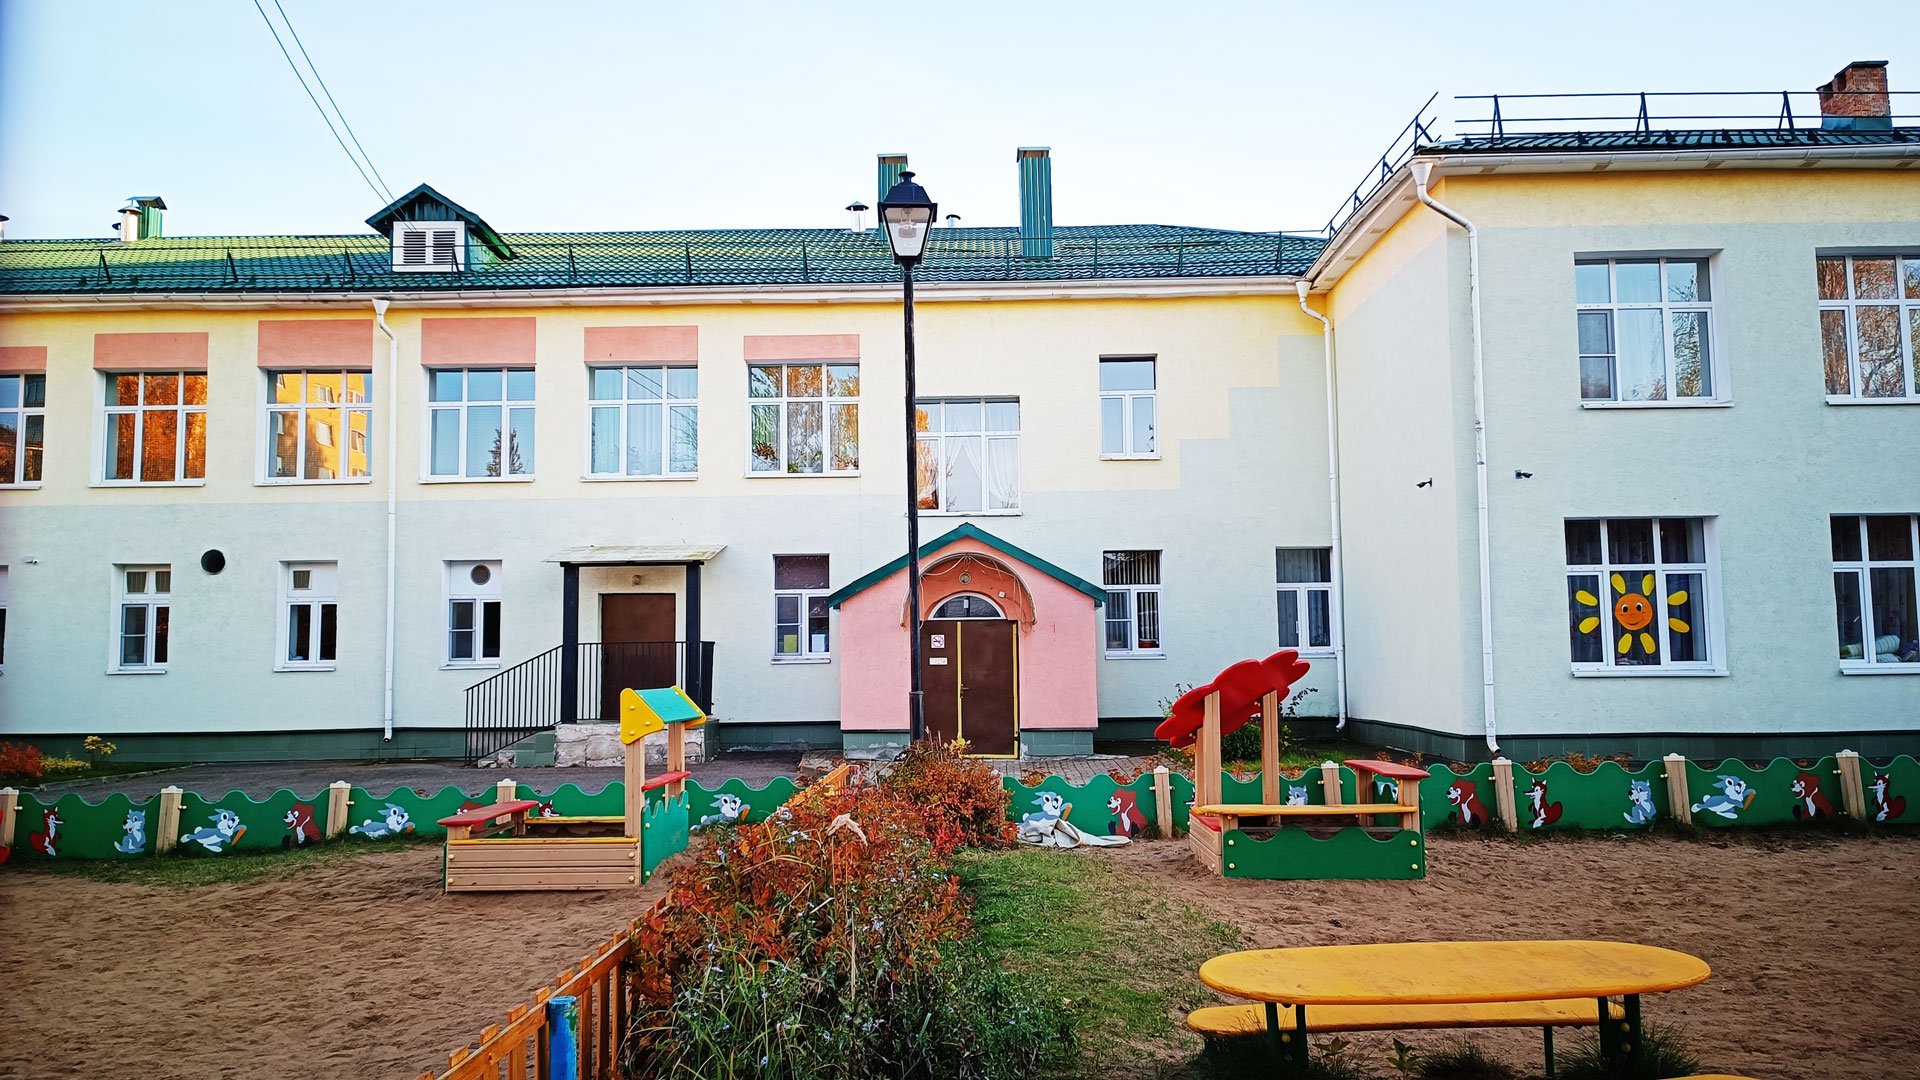 Детский сад 8 Ярославль: общий вид здания.